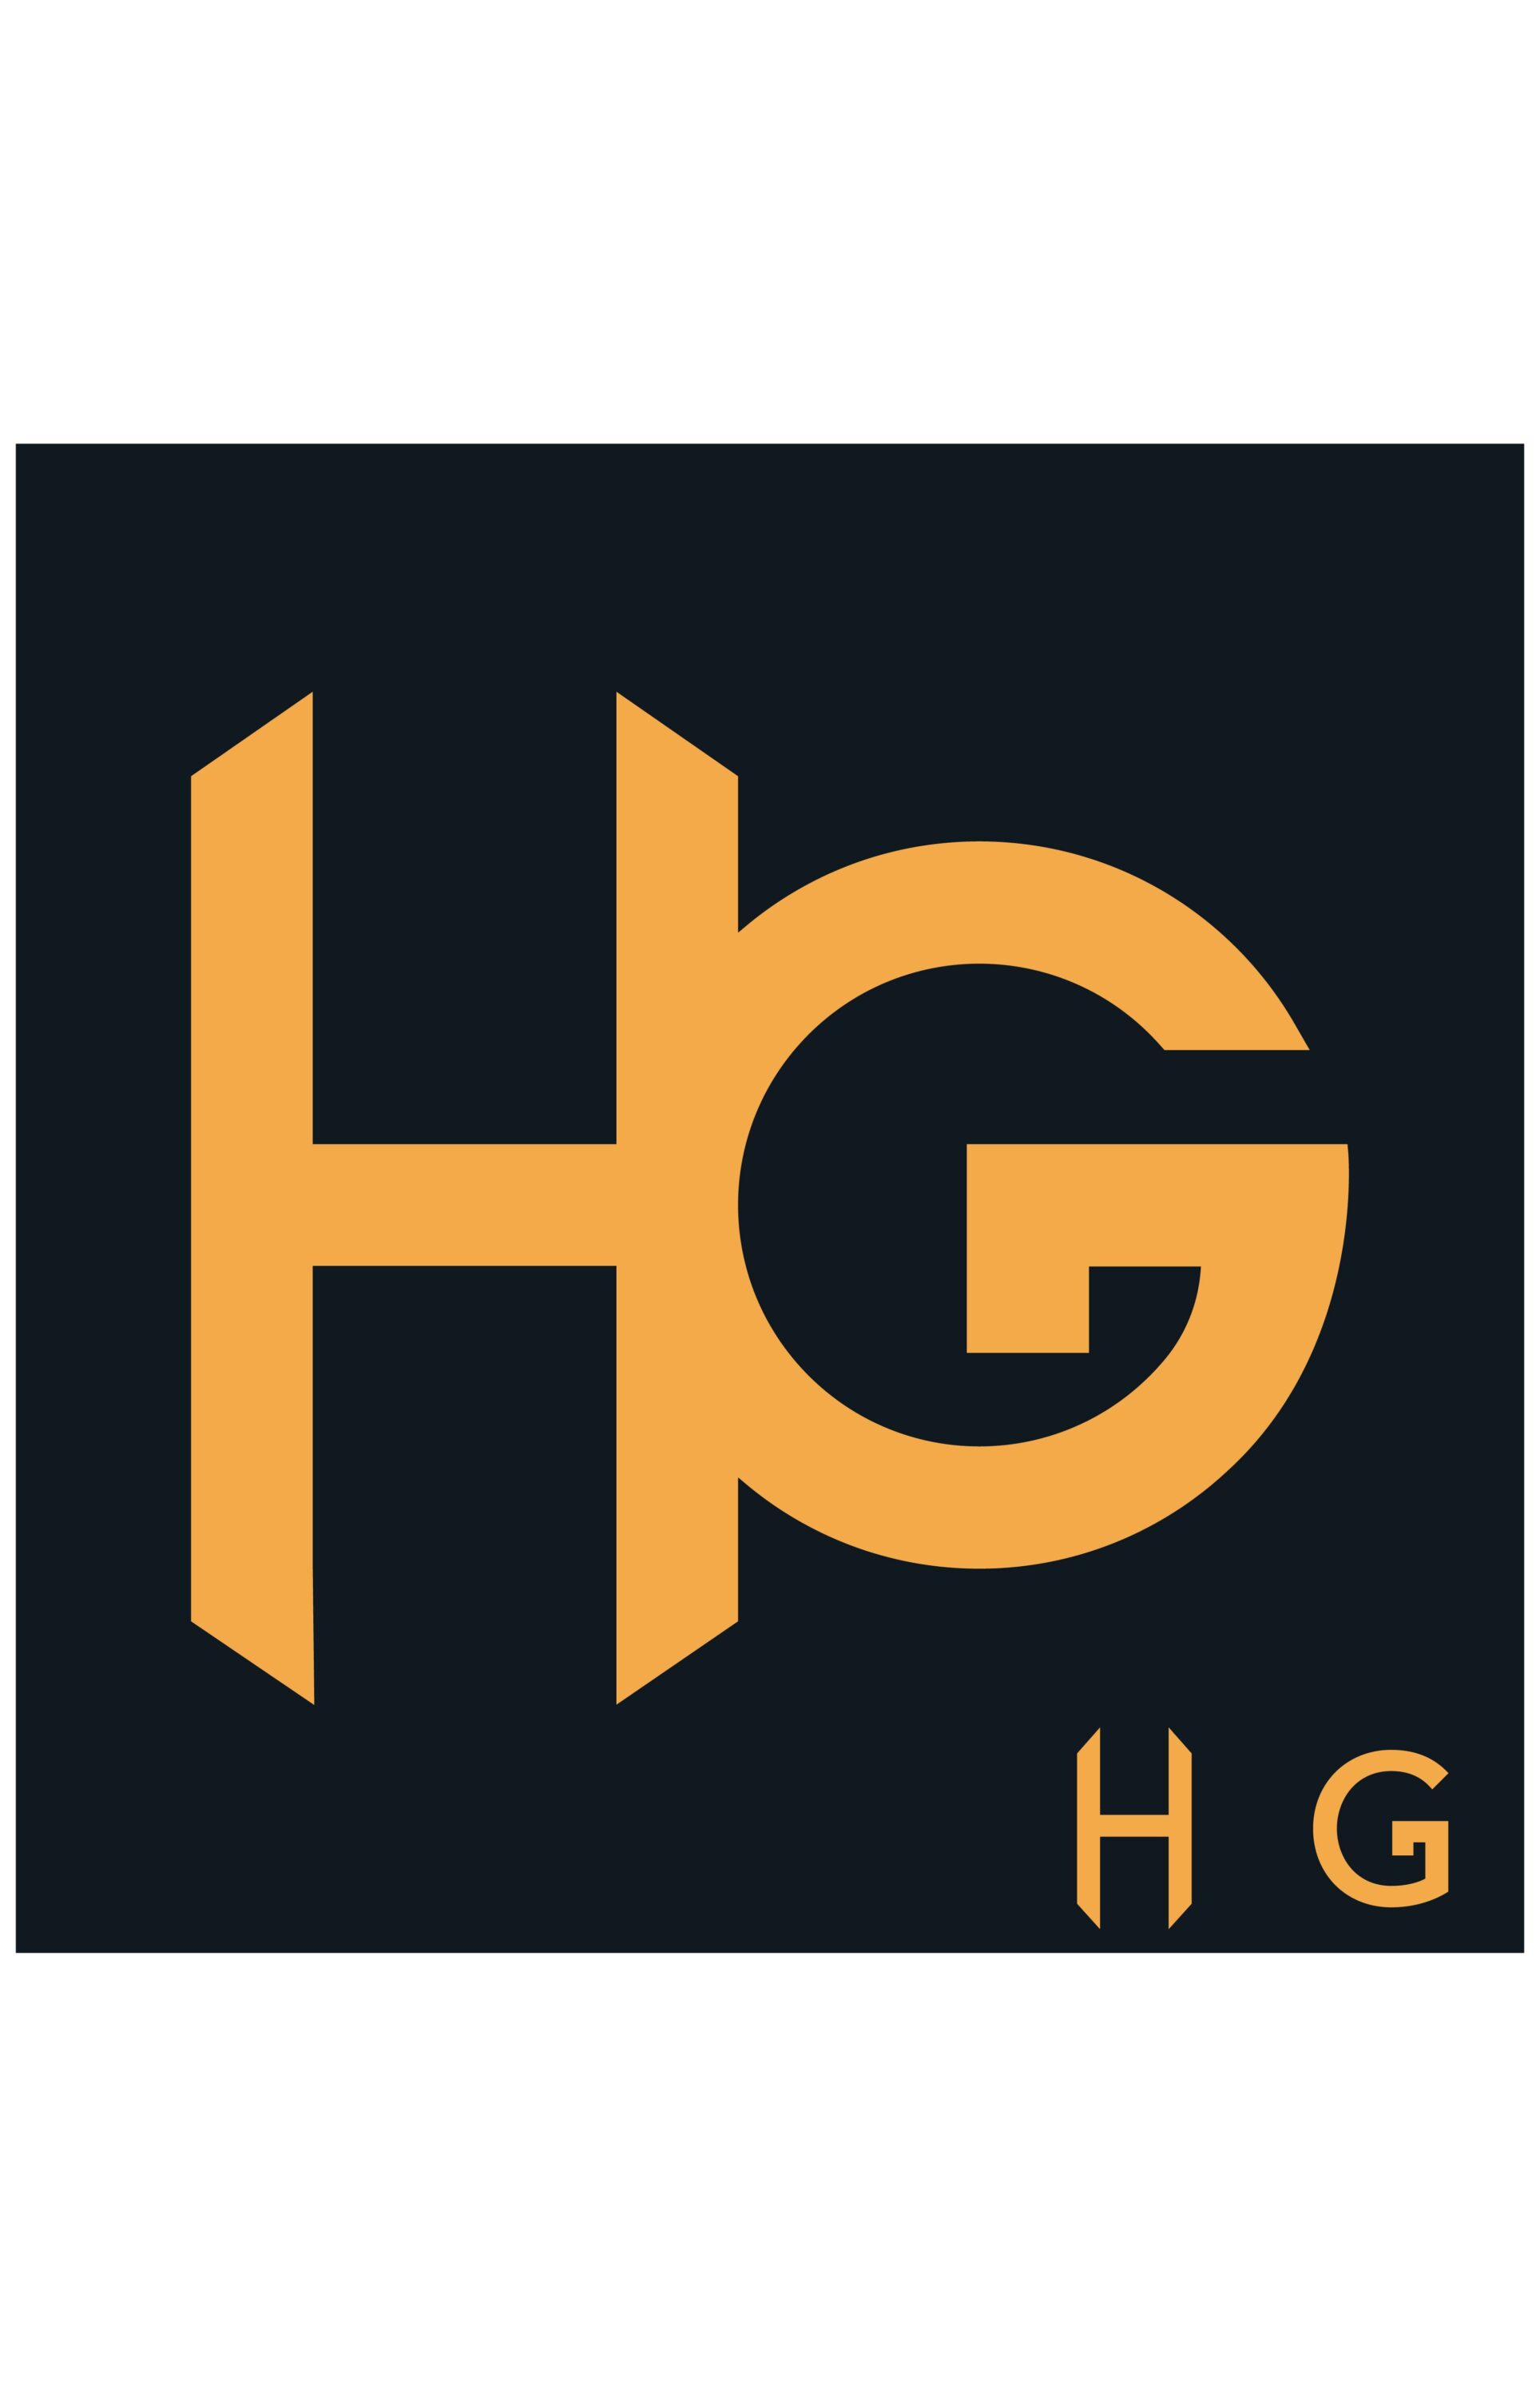 Letter Logo Design HG Business Logo Pinterest Image.